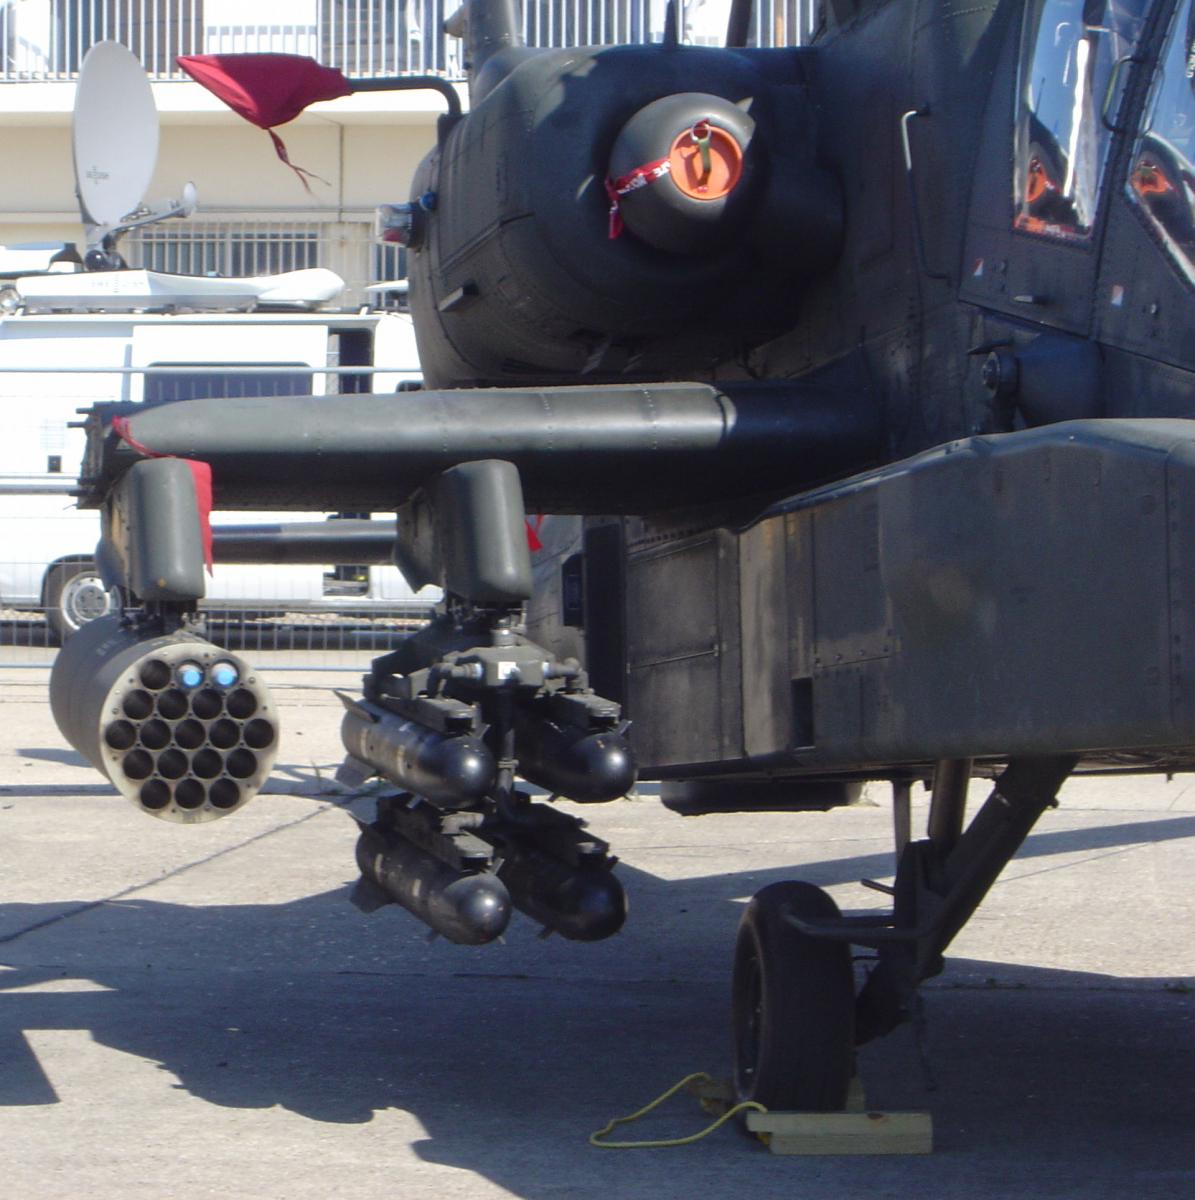 Les missiles Hellfire et les roquettes Hydra-70 sont stockés sur le côté des hélicoptères Apache, tel que visible sur la photographie.